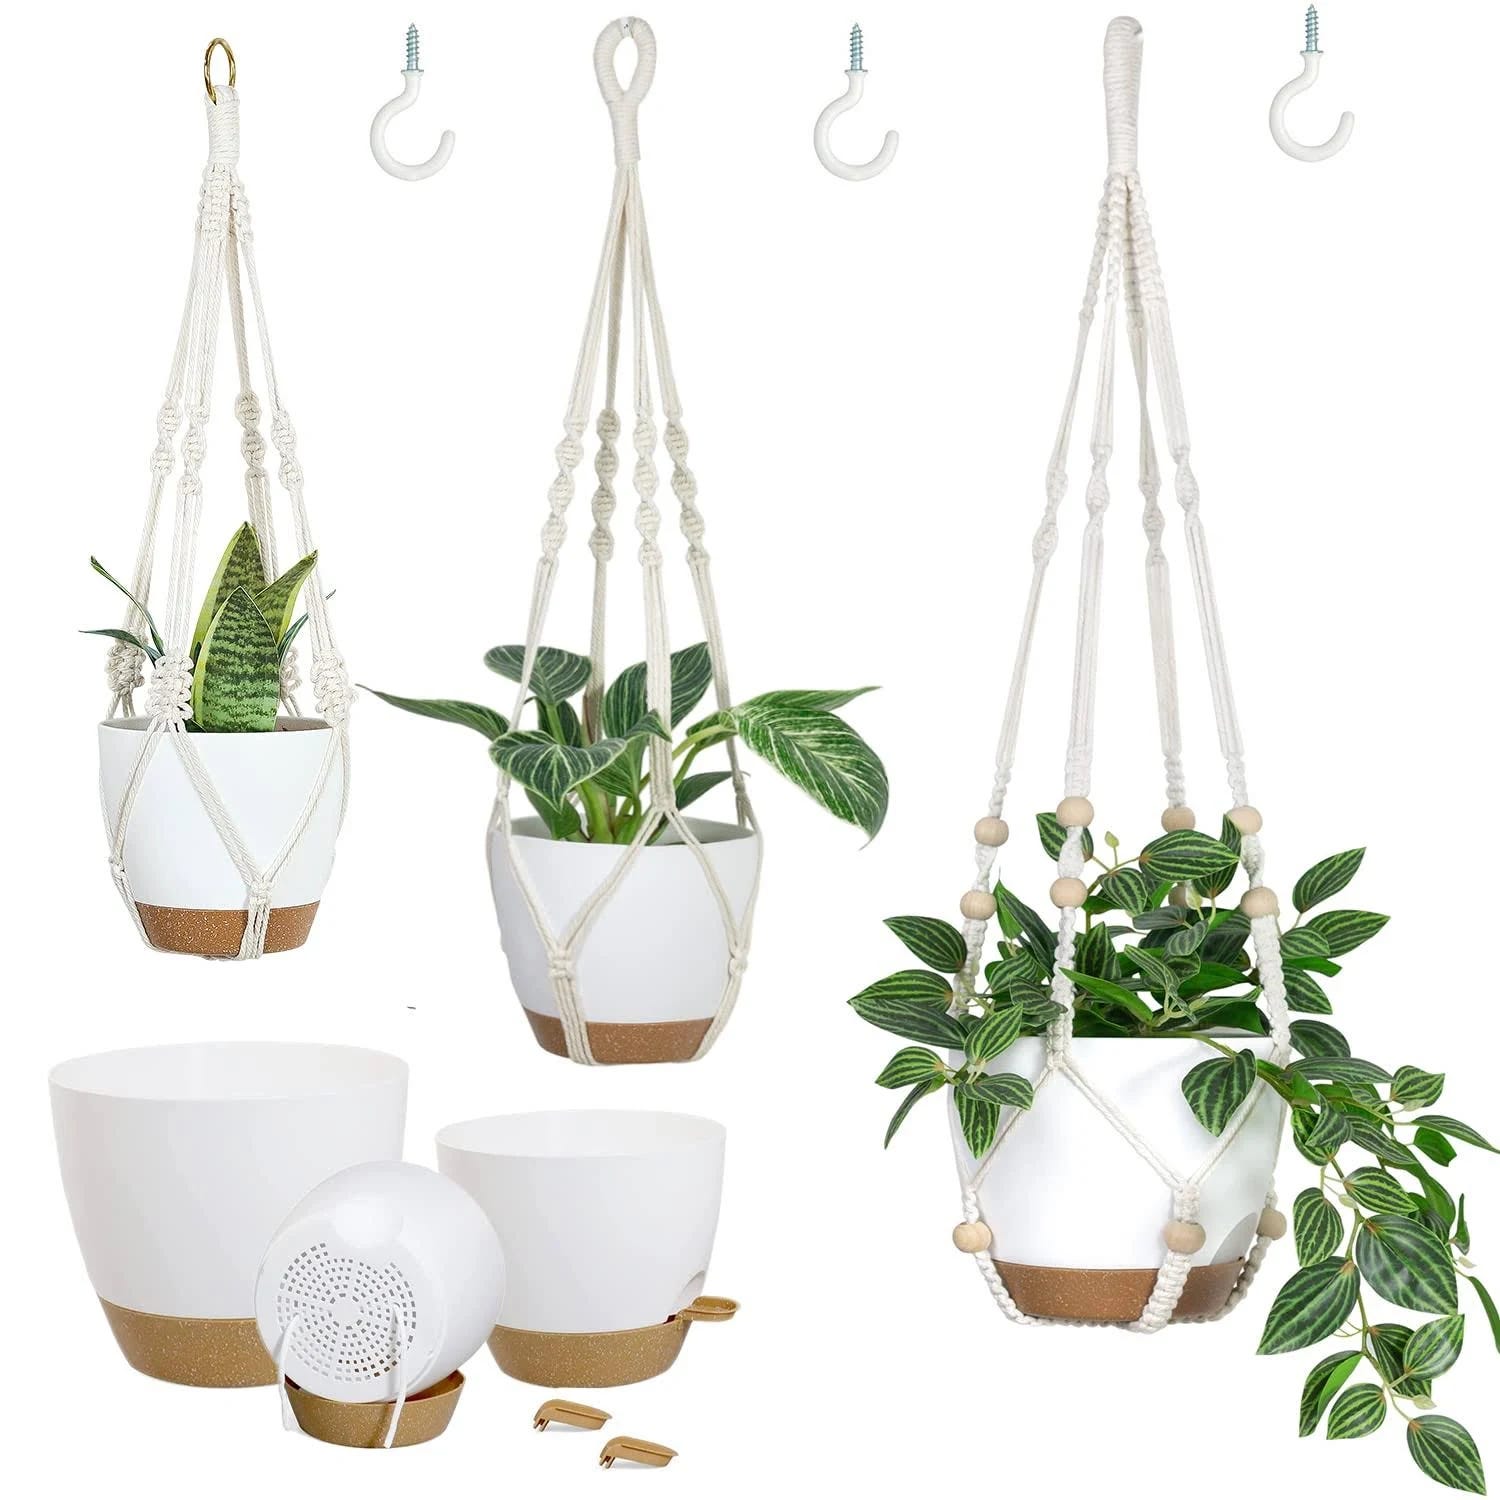 Bouqlife Macrame Hanging Garden Set: 3 Self-Watering Planters for Indoor-Outdoor Use | Image